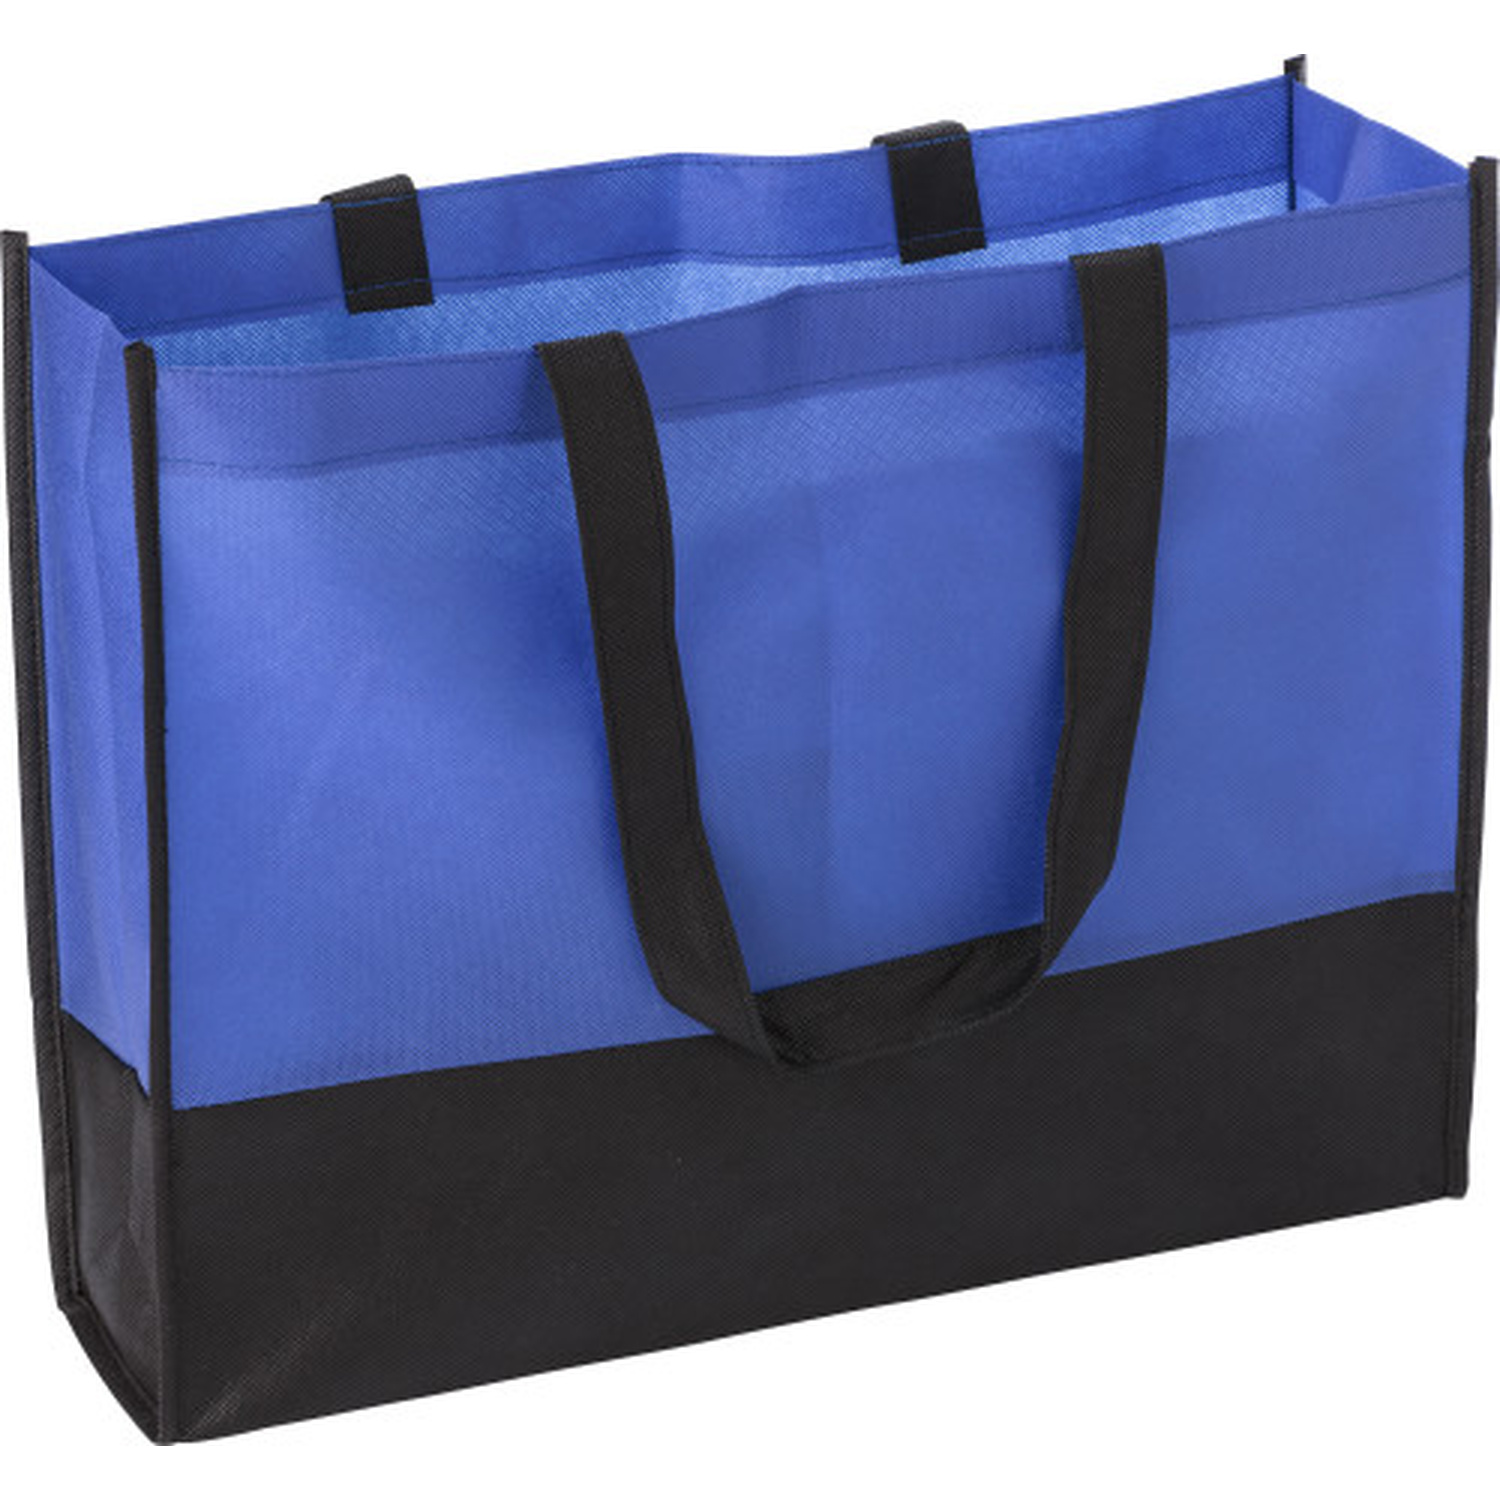 000971 023999999 3d135 frt pro01 fal - Non-Woven Bottom Contrast Shopping Bag